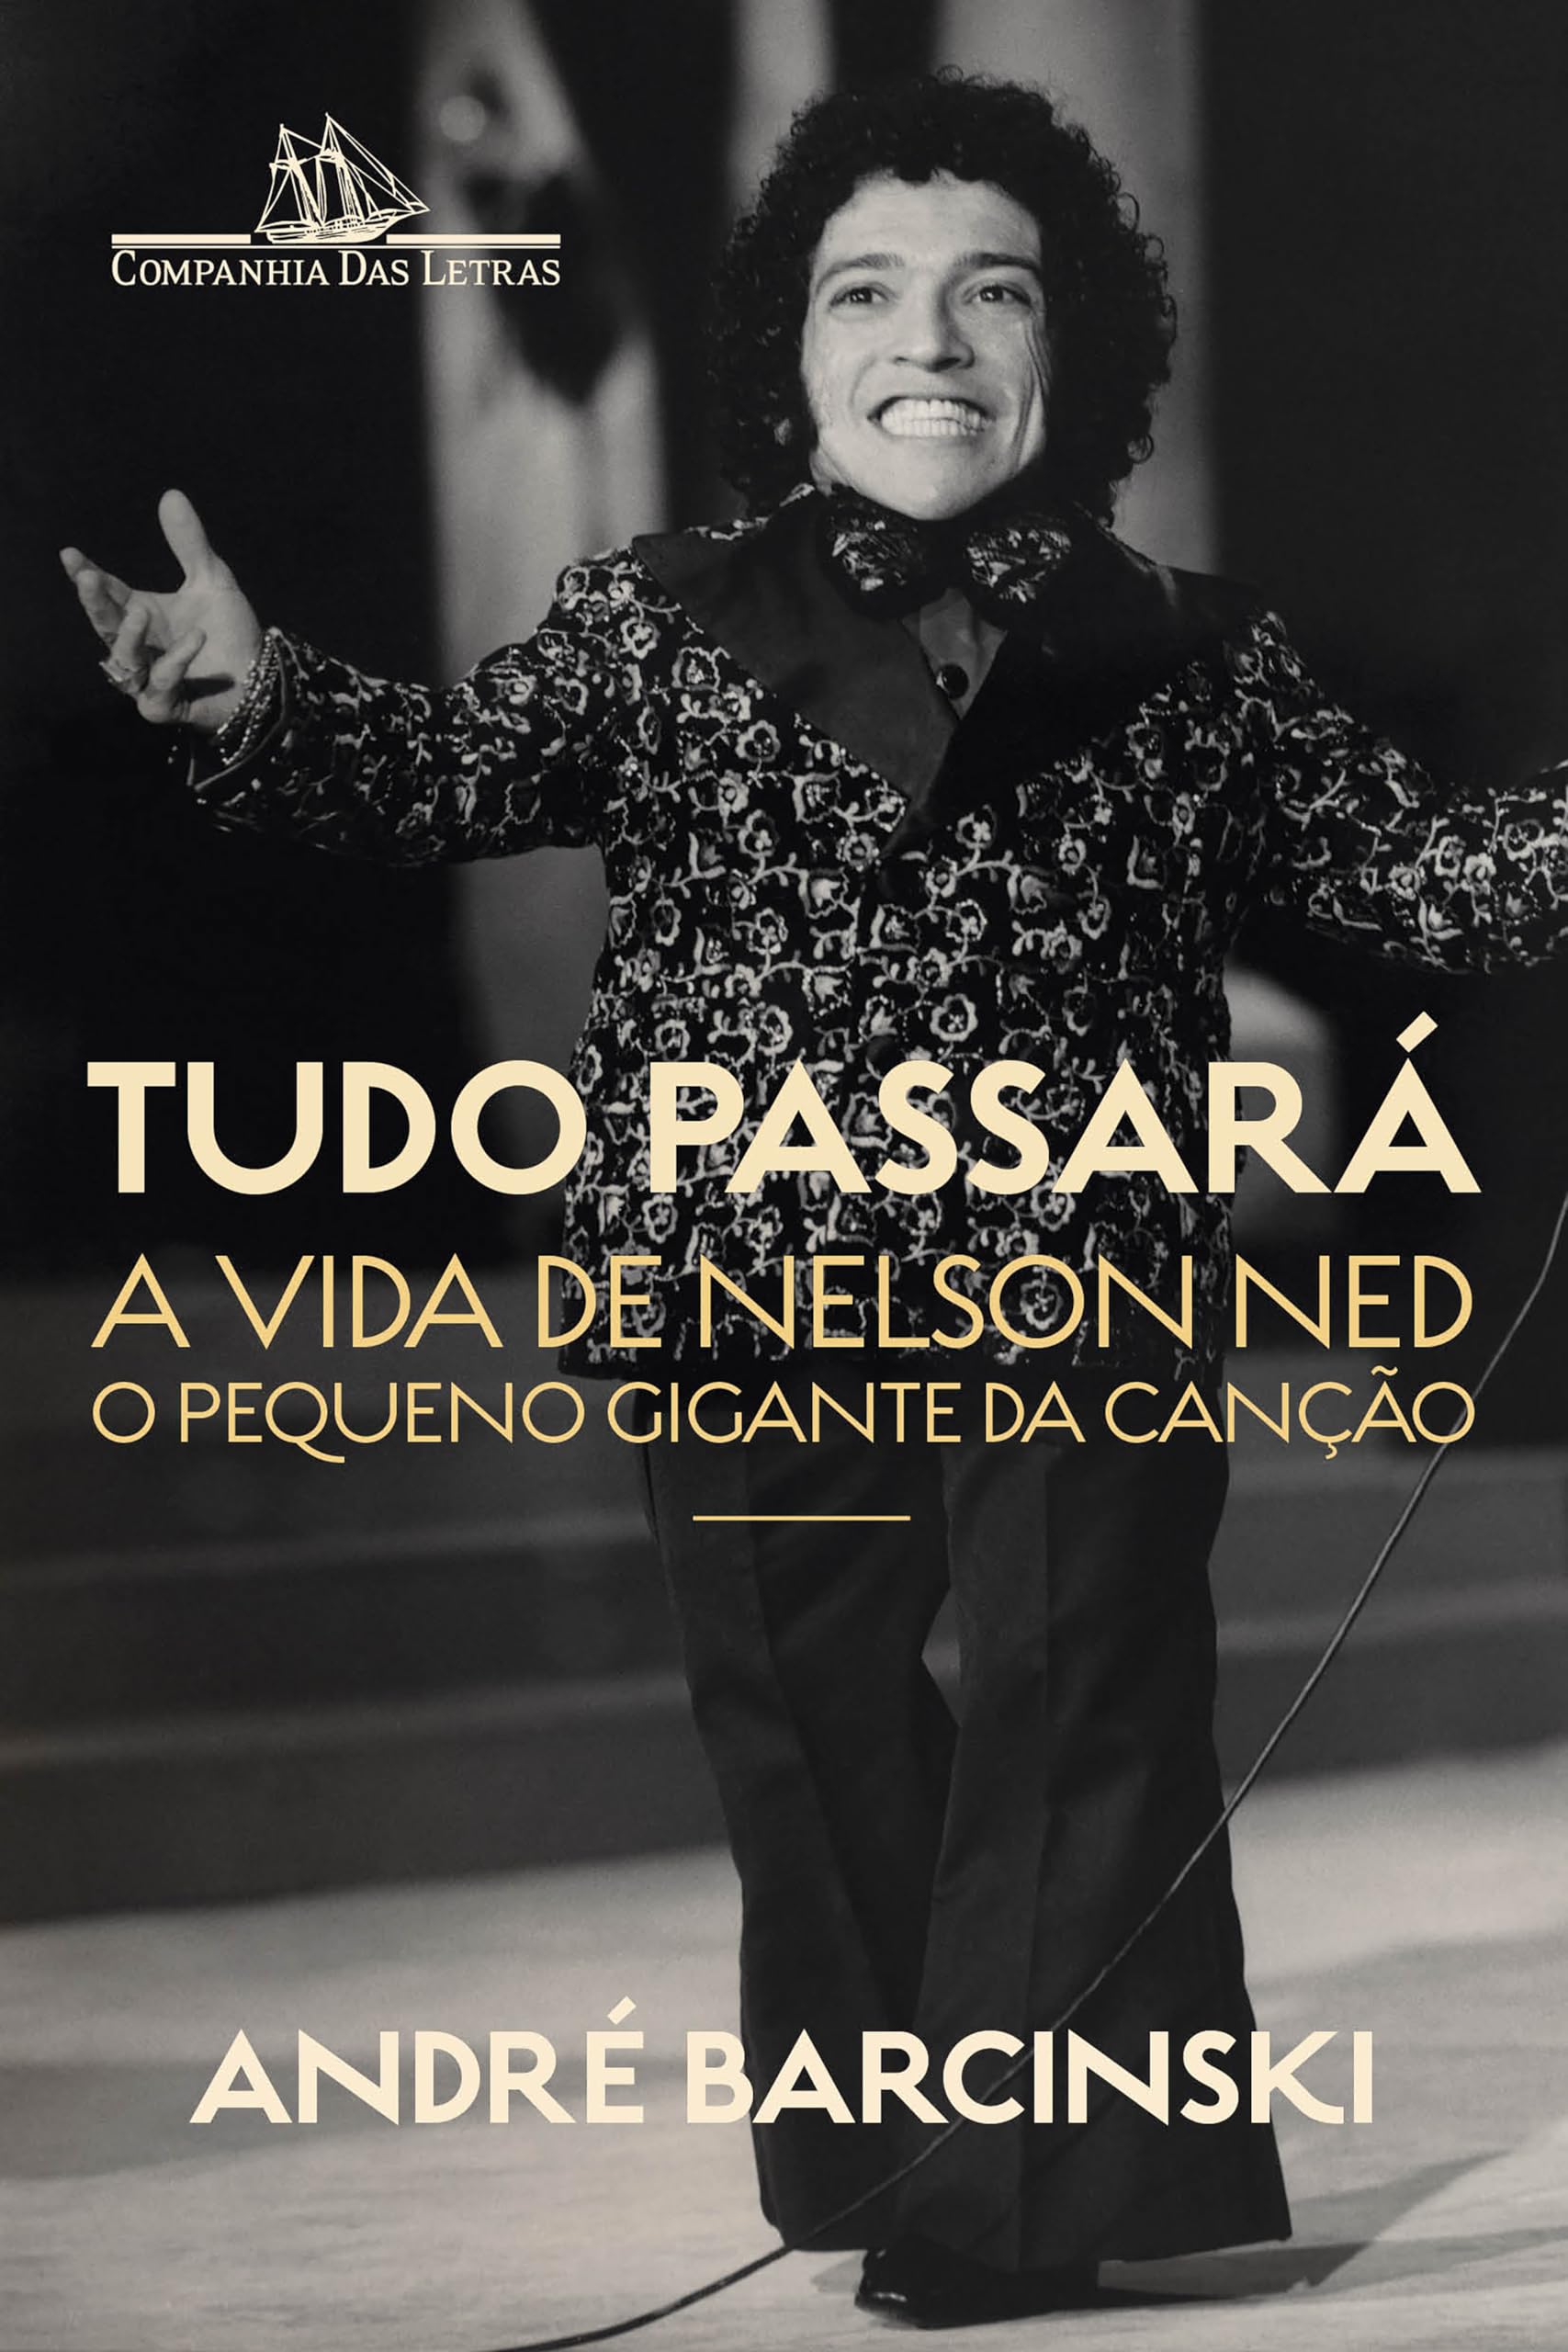 Tudo passará: A vida de Nelson Ned, o Pequeno Gigante da Canção (Portuguese Edition)